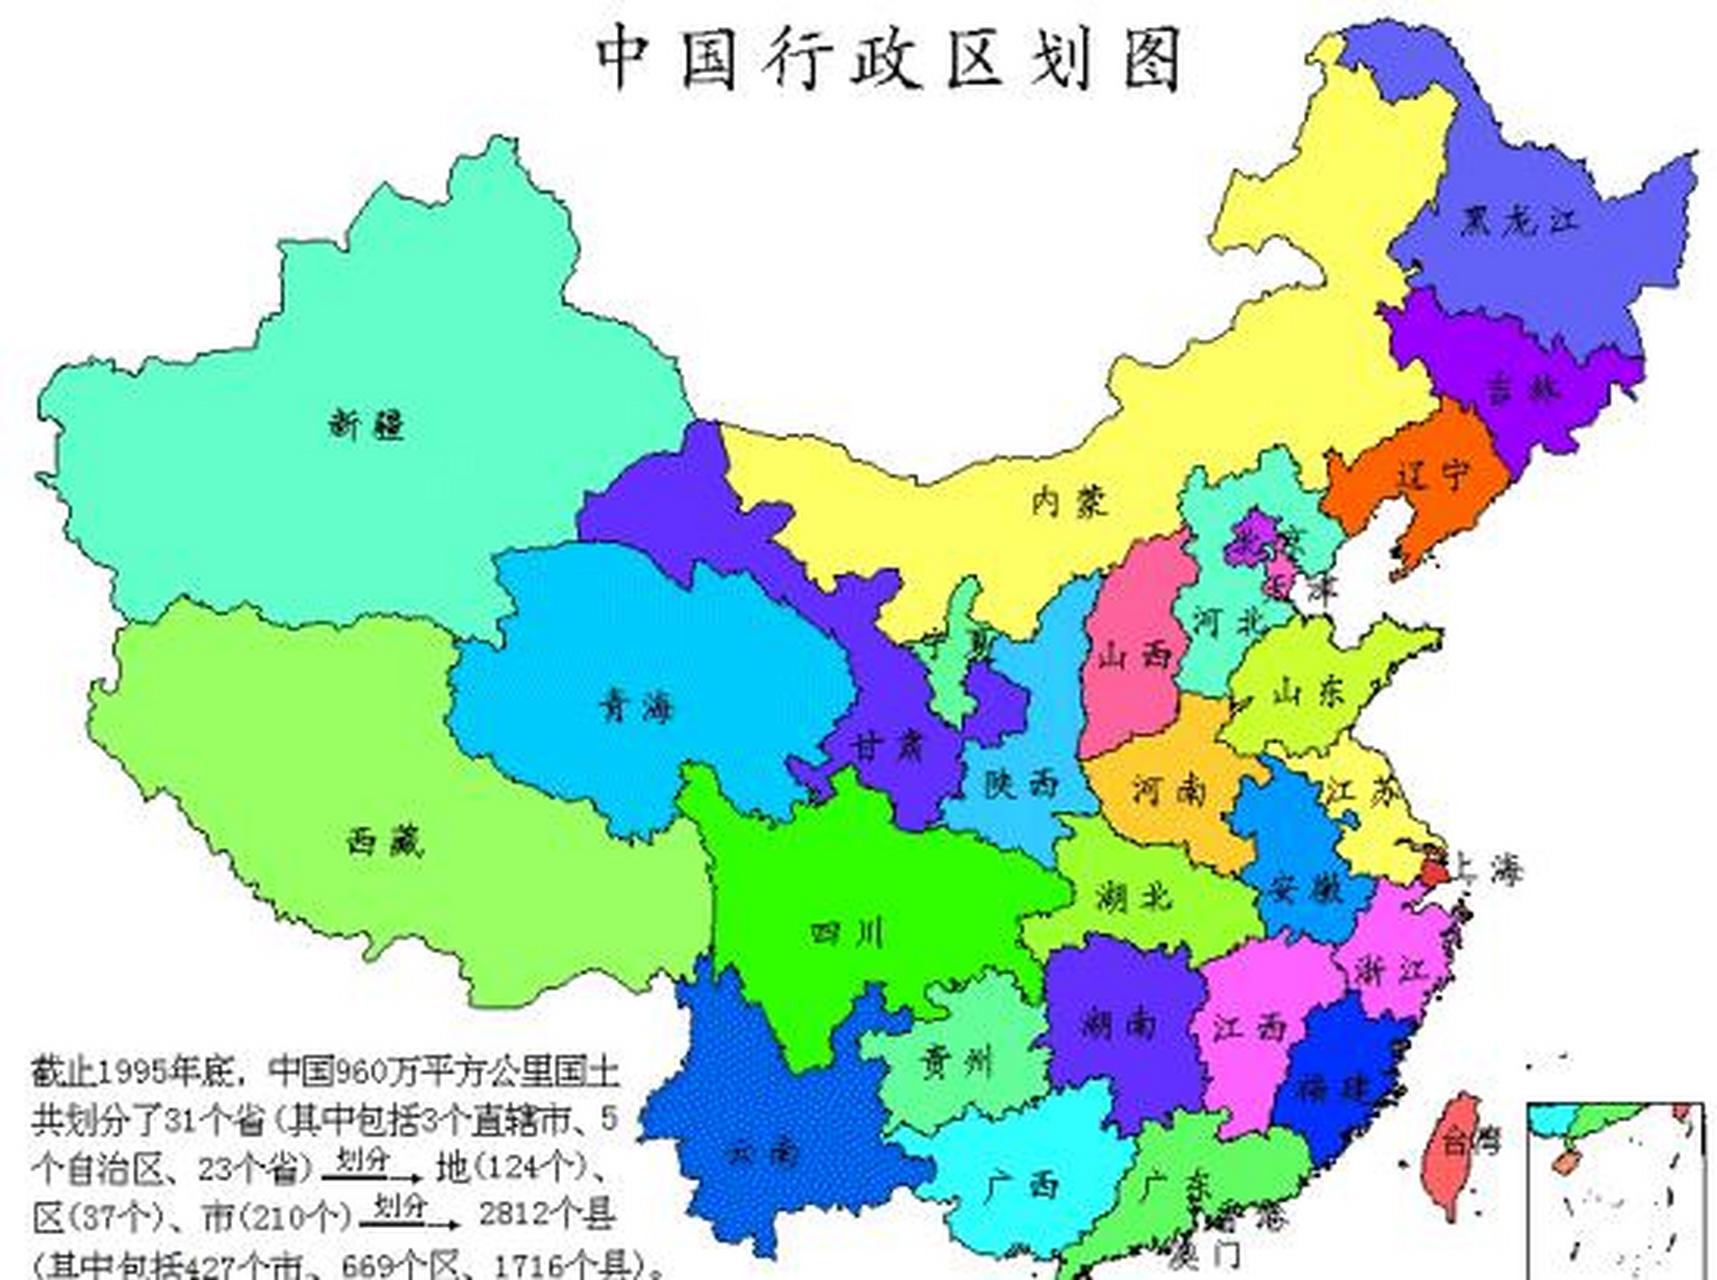 中国面积最大的十大省份 1,新疆,面积166万平方公里 2,西藏,面积122